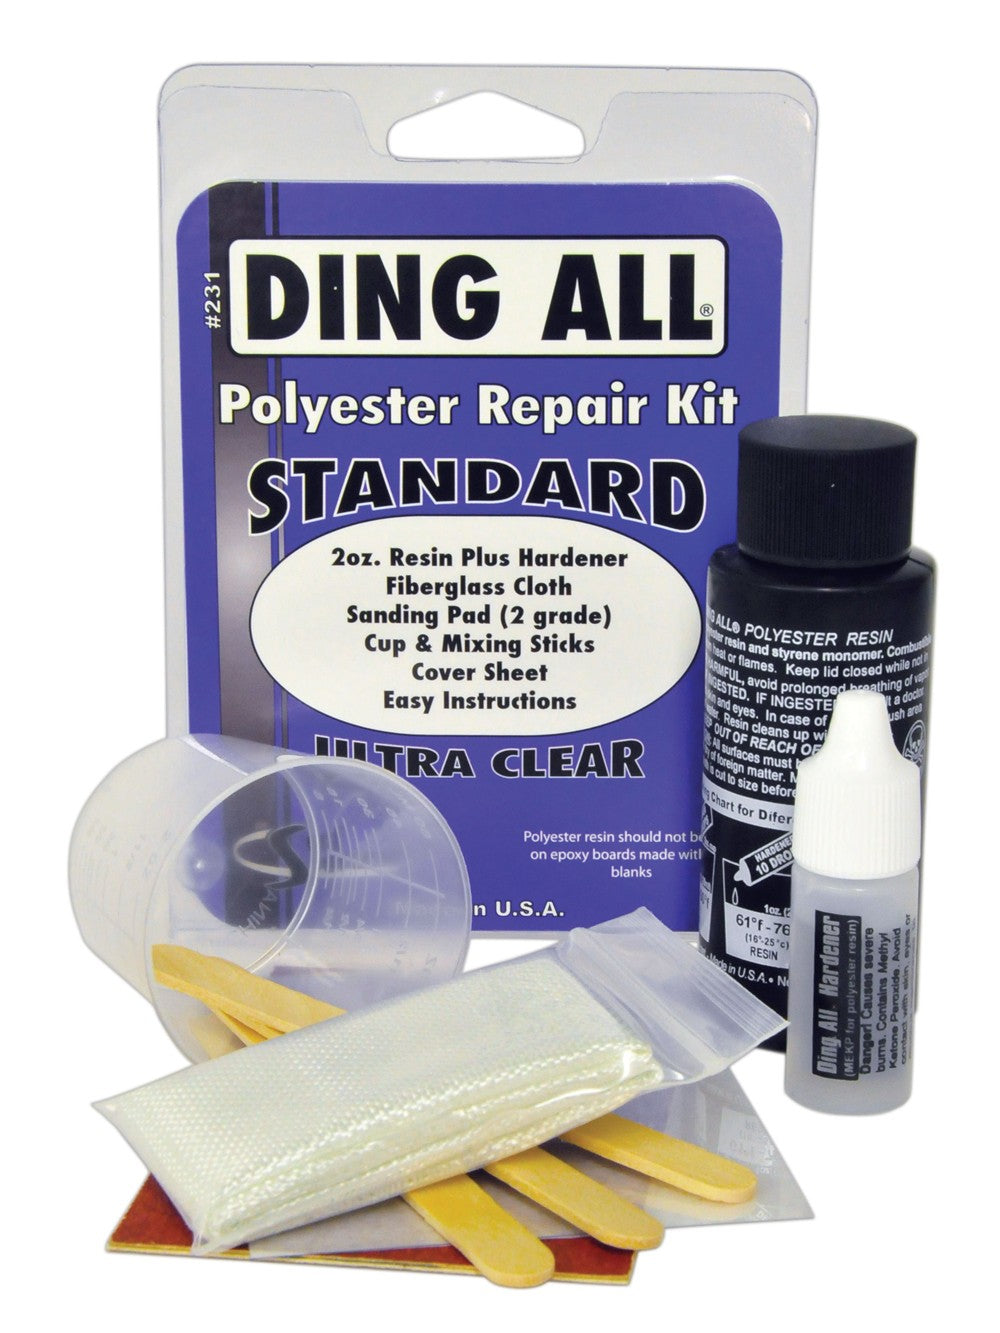 DING ALL - Kit de reparación - Kit de reparación estándar Poliéster PU